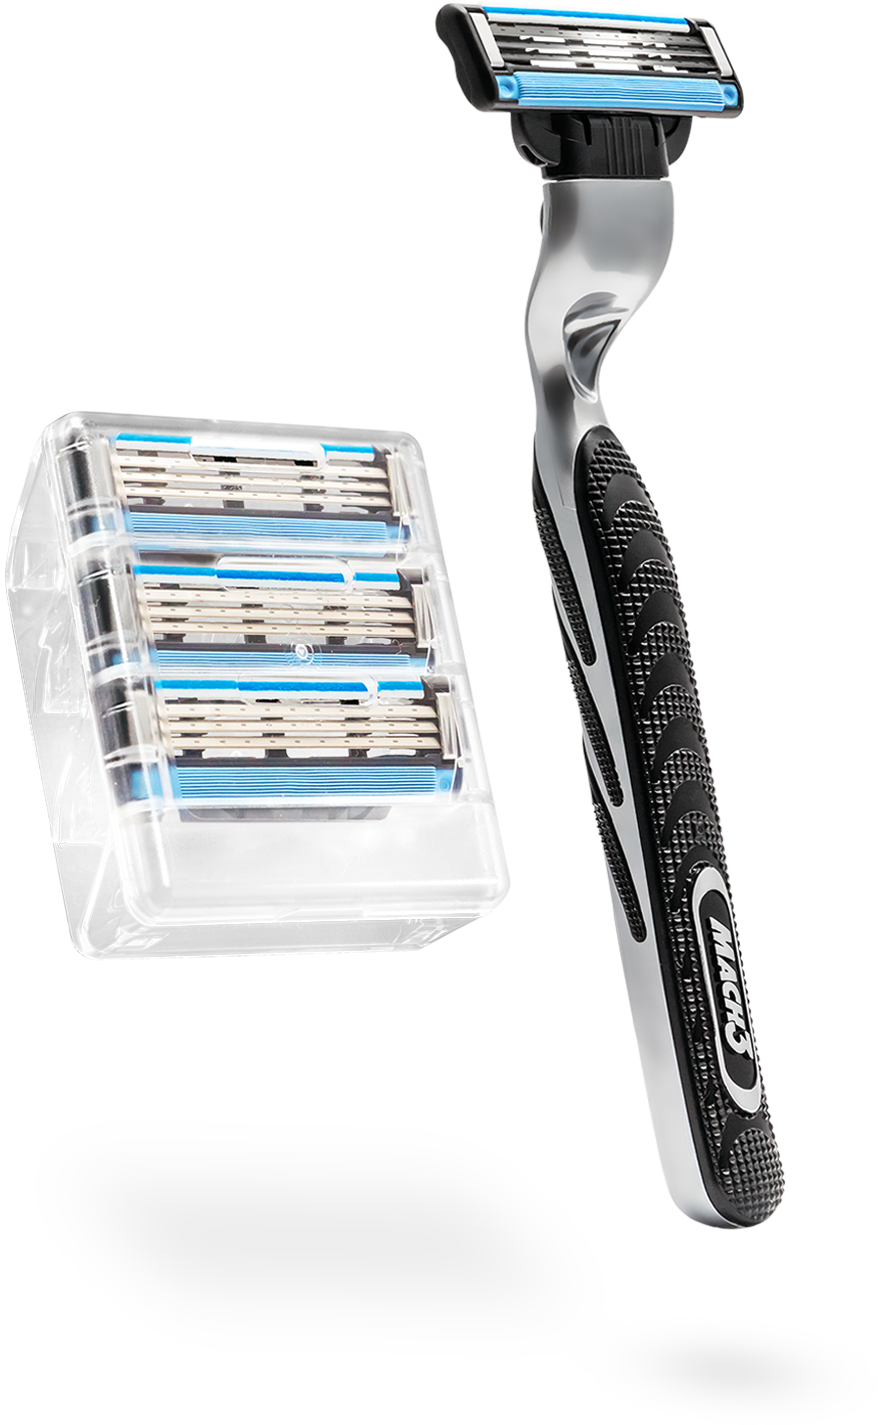 Gillette Shaving Product PNG Image